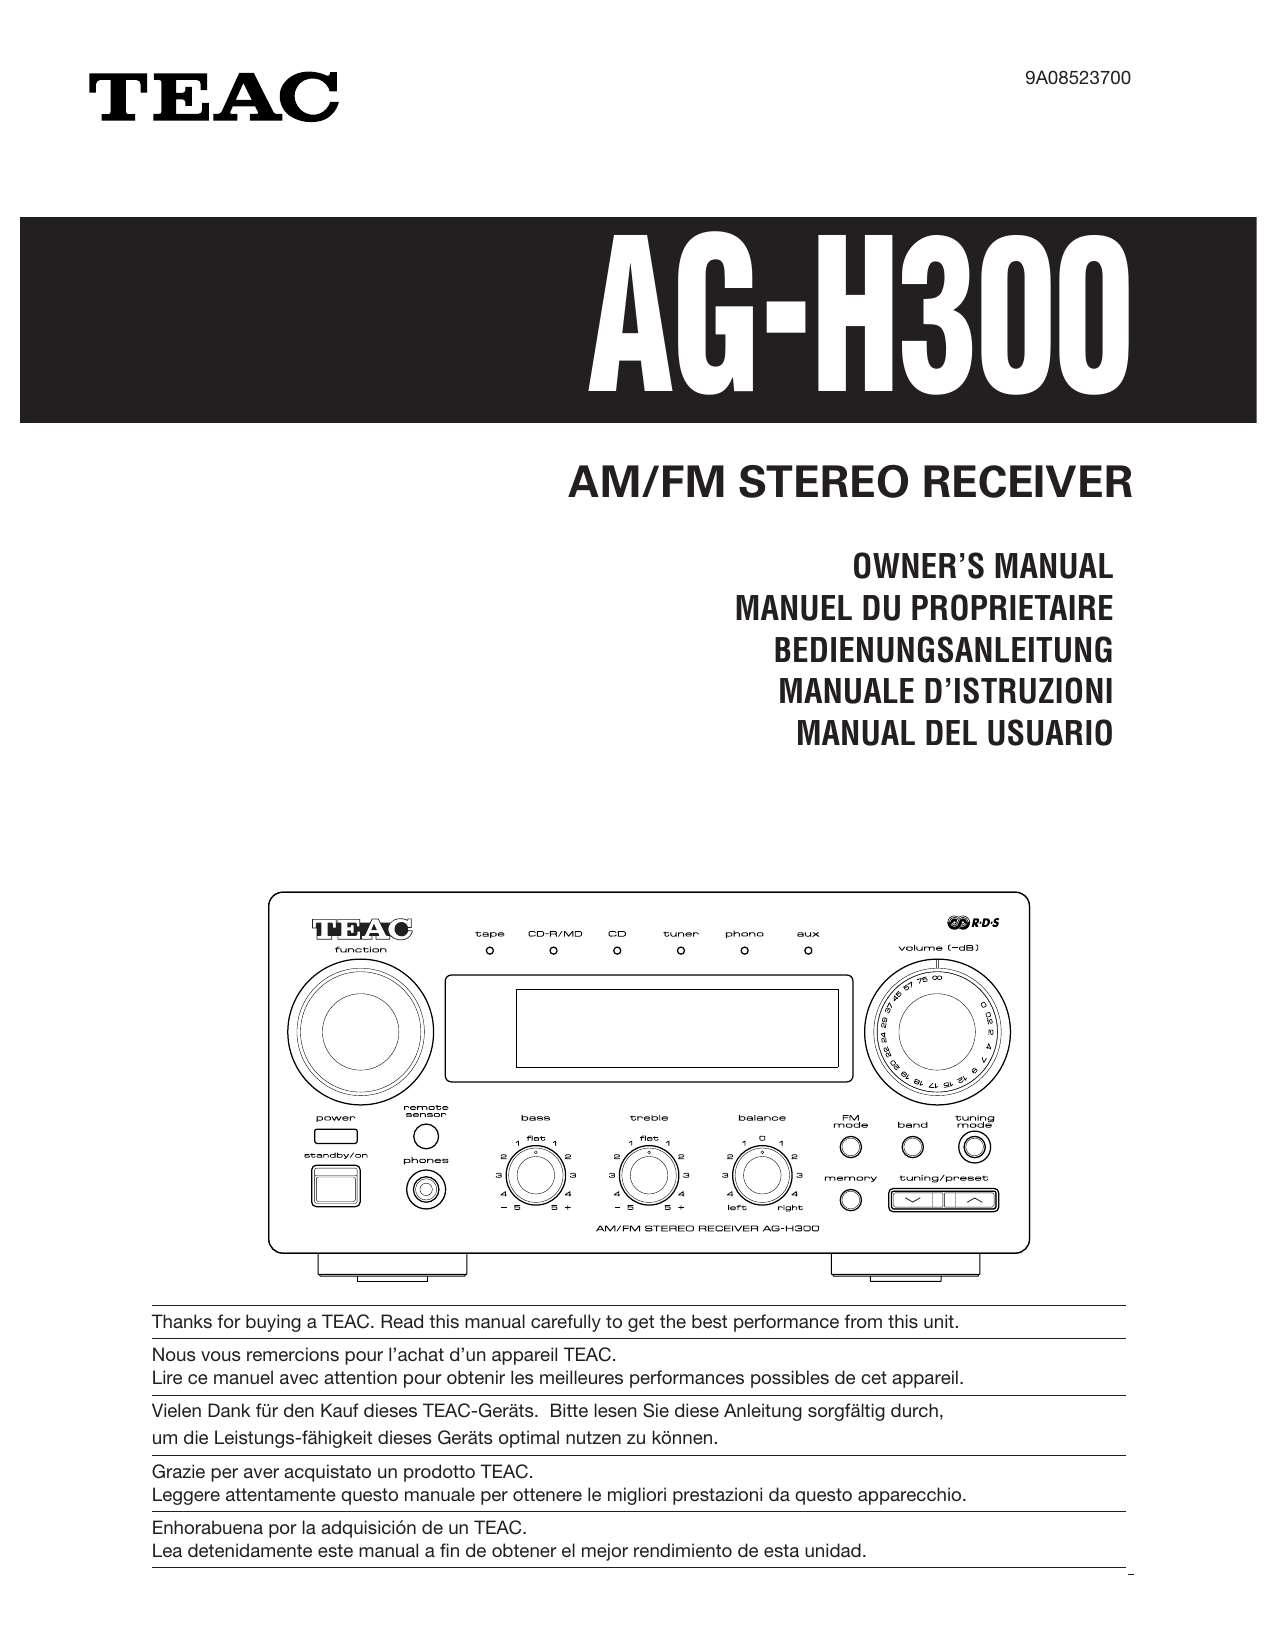 Service Manual-Anleitung für Teac A-H500 